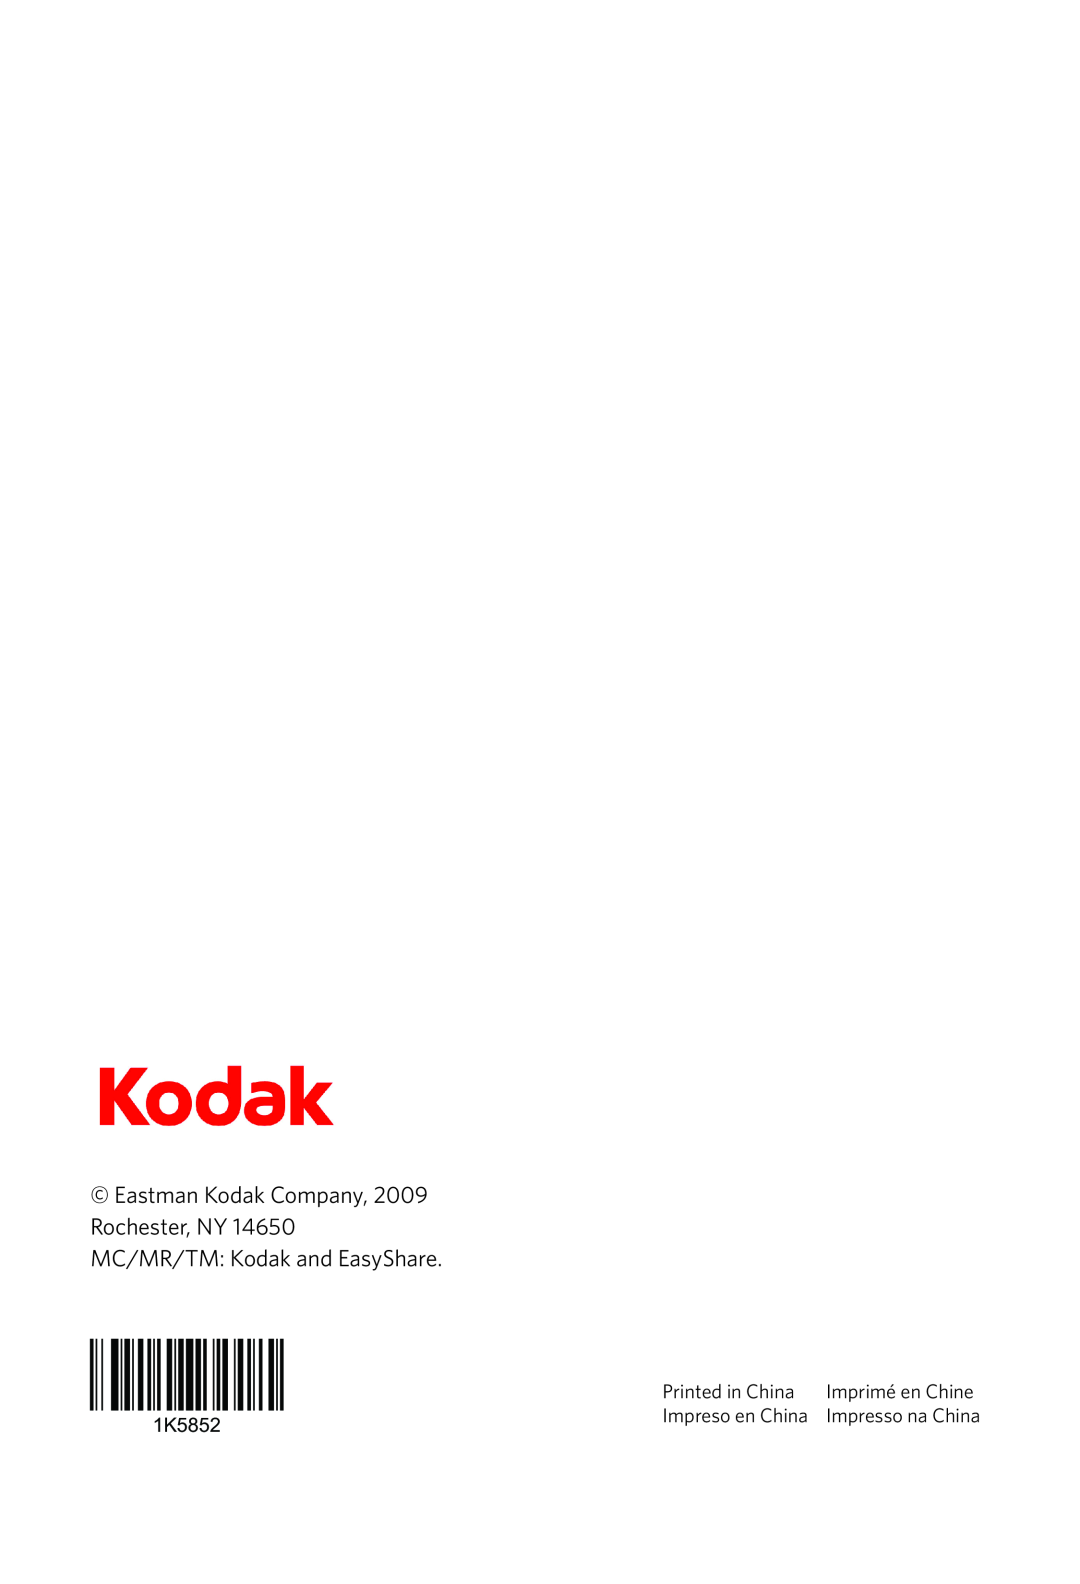 Kodak 6100 Series manual Imprimé en Chine, Impreso en China, 1K5852, Impresso na China 